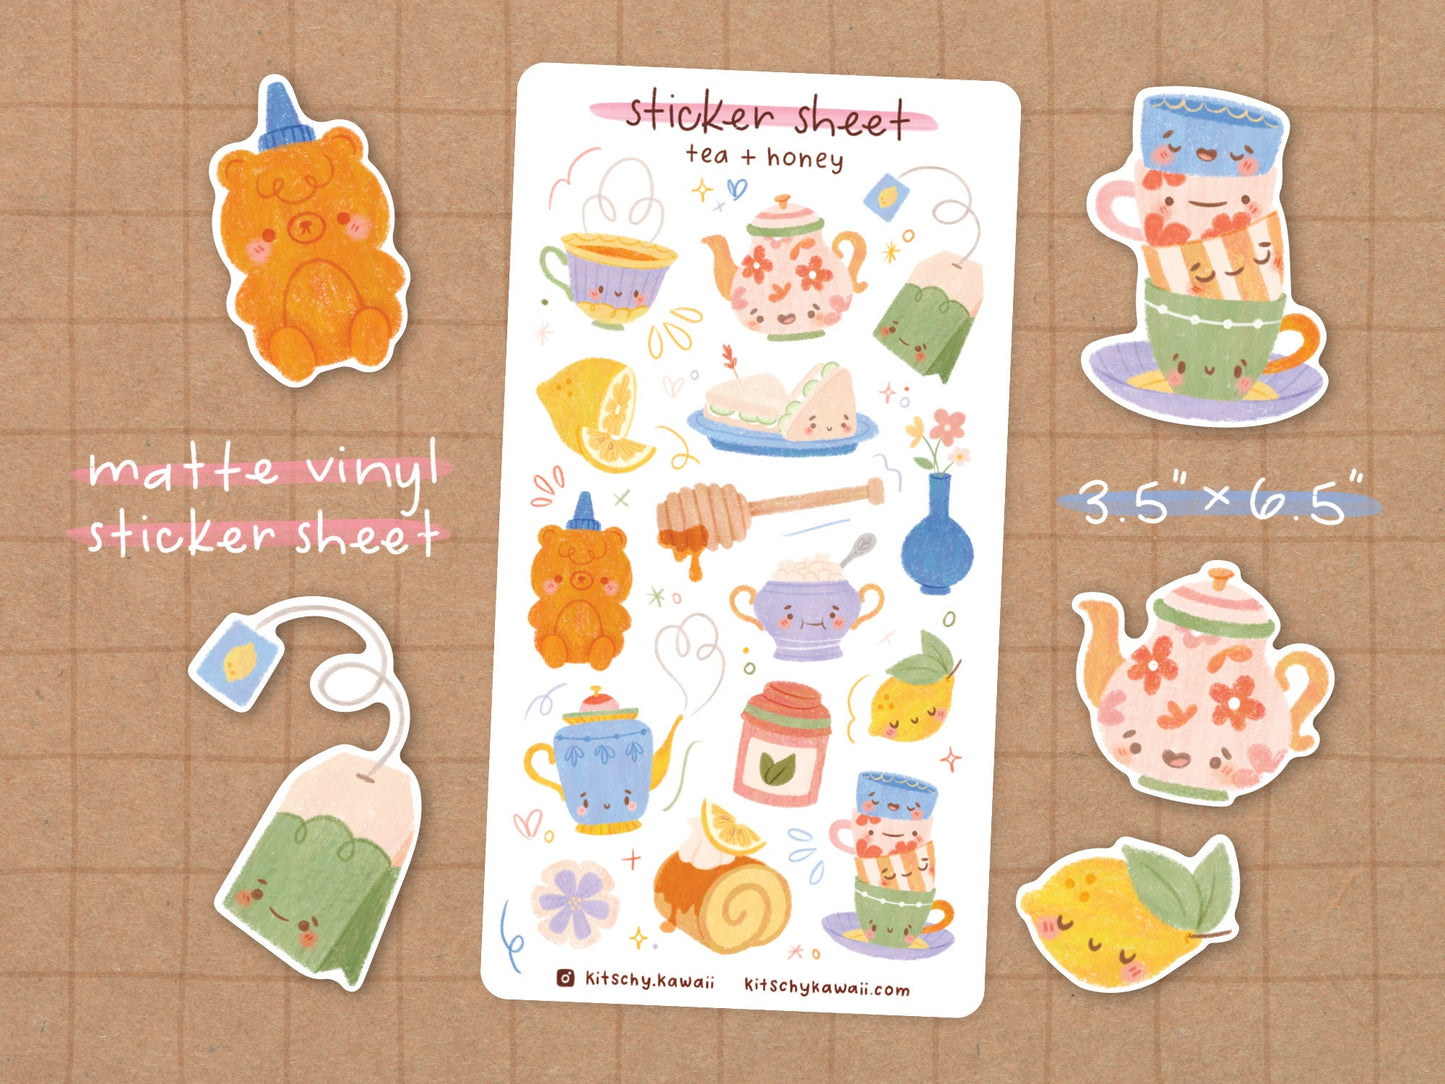 tea + honey Sticker Sheet